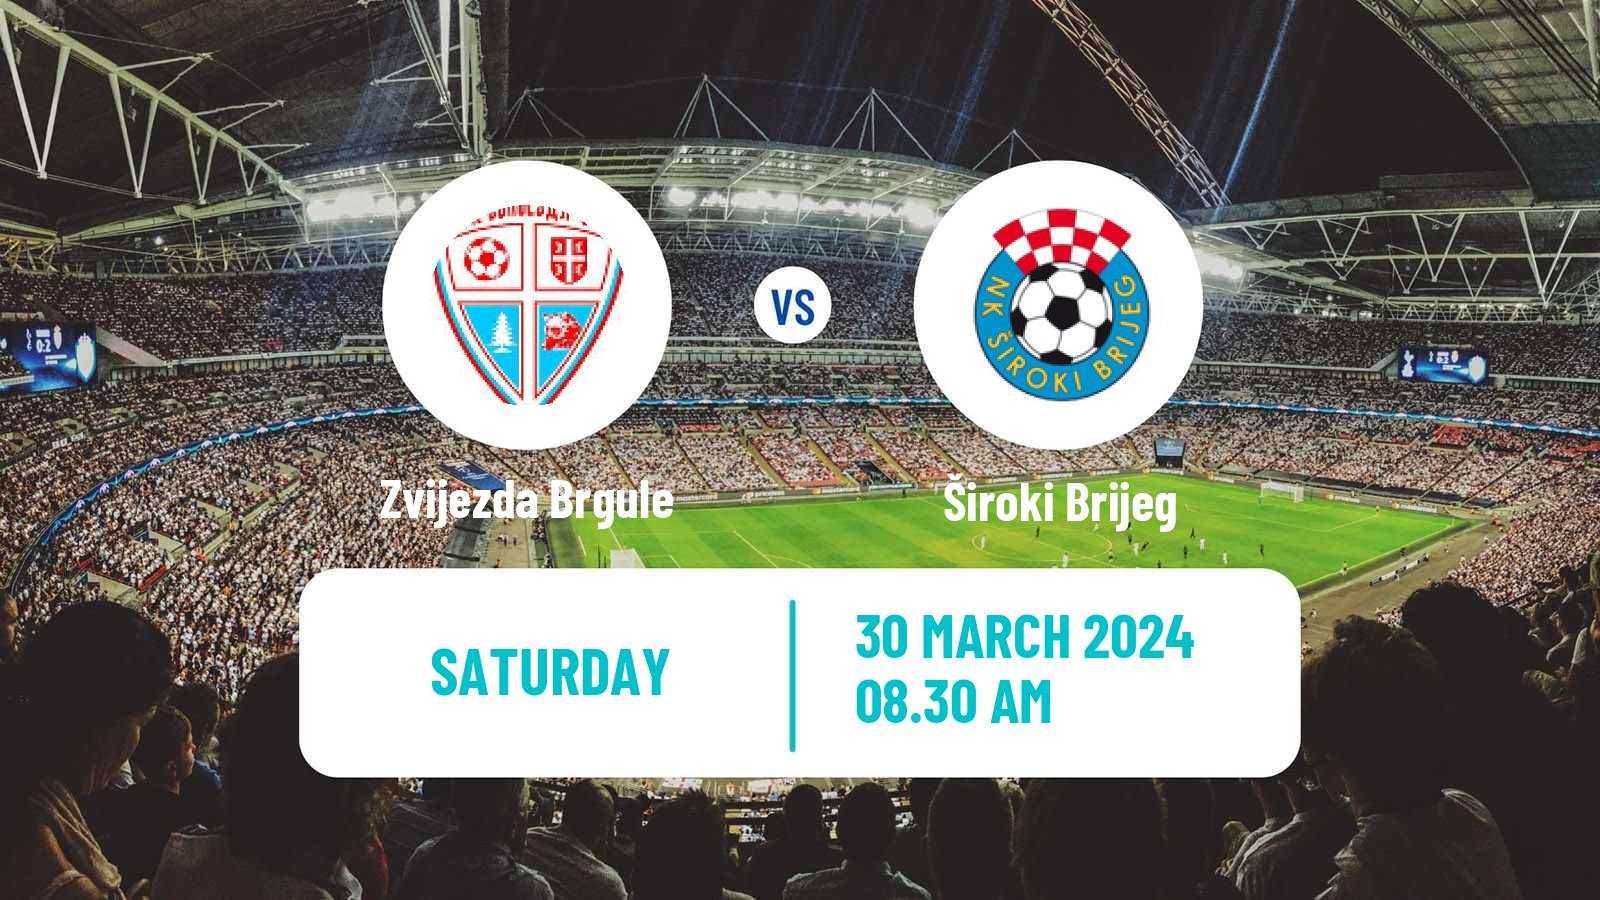 Soccer Bosnian Premier League Zvijezda Brgule - Široki Brijeg